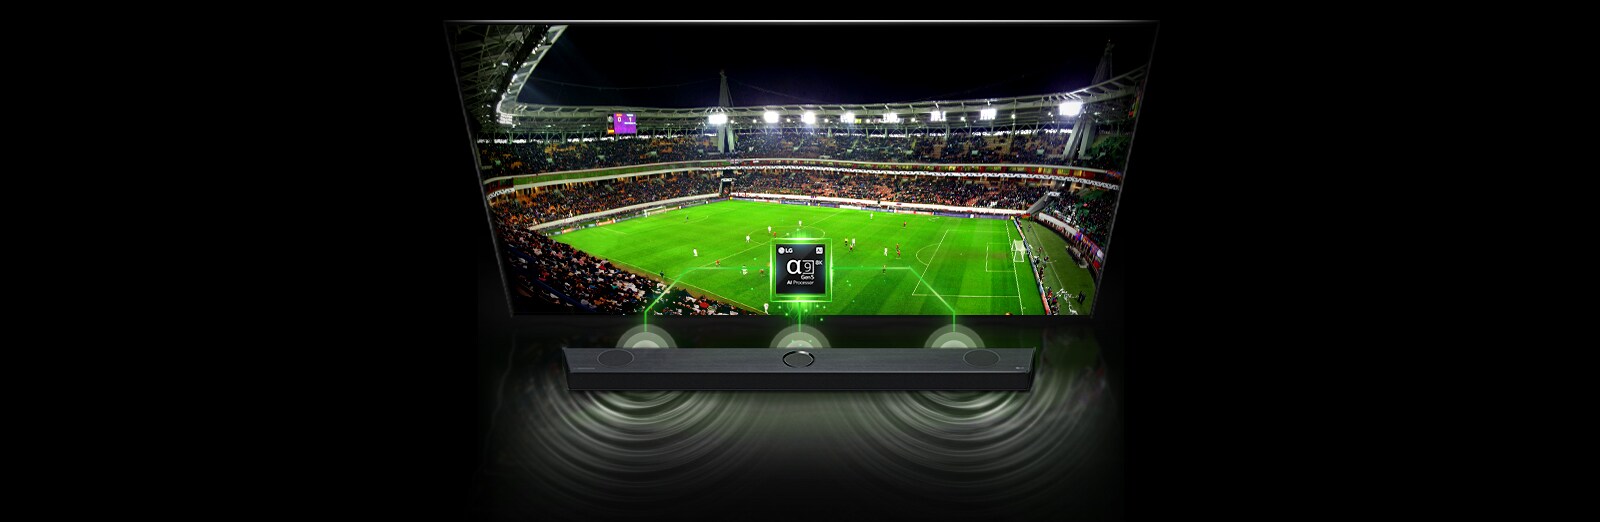 LG OLED evo TV 4K, série G2, Gallery Edition, Processador α9 Gen5 AI, webOS  22 - OLED55G26LA